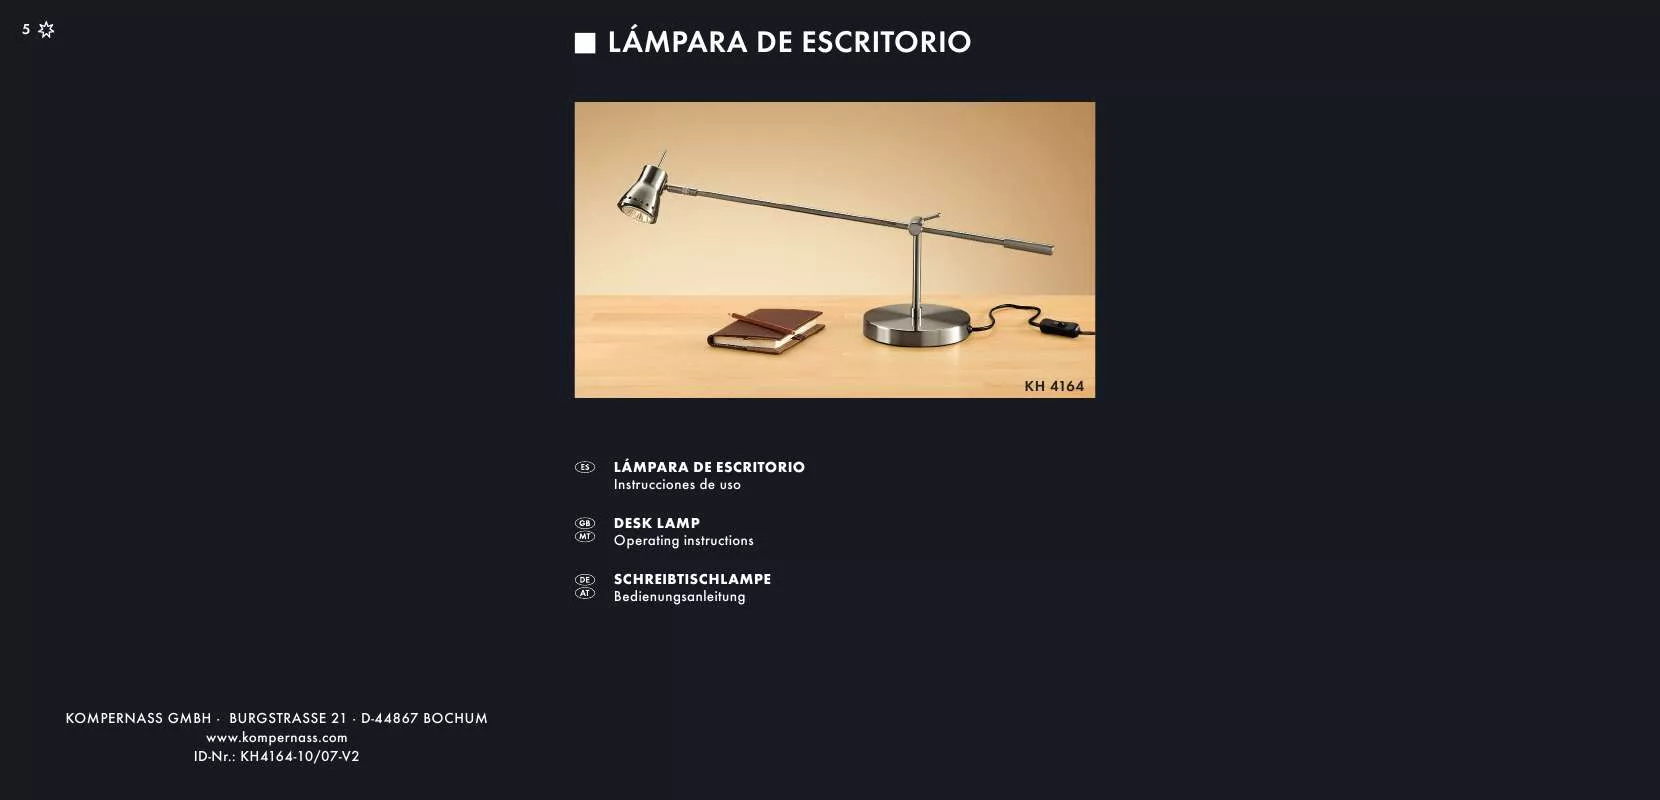 Mode d'emploi KOMPERNASS KH 4164 DESK LAMP